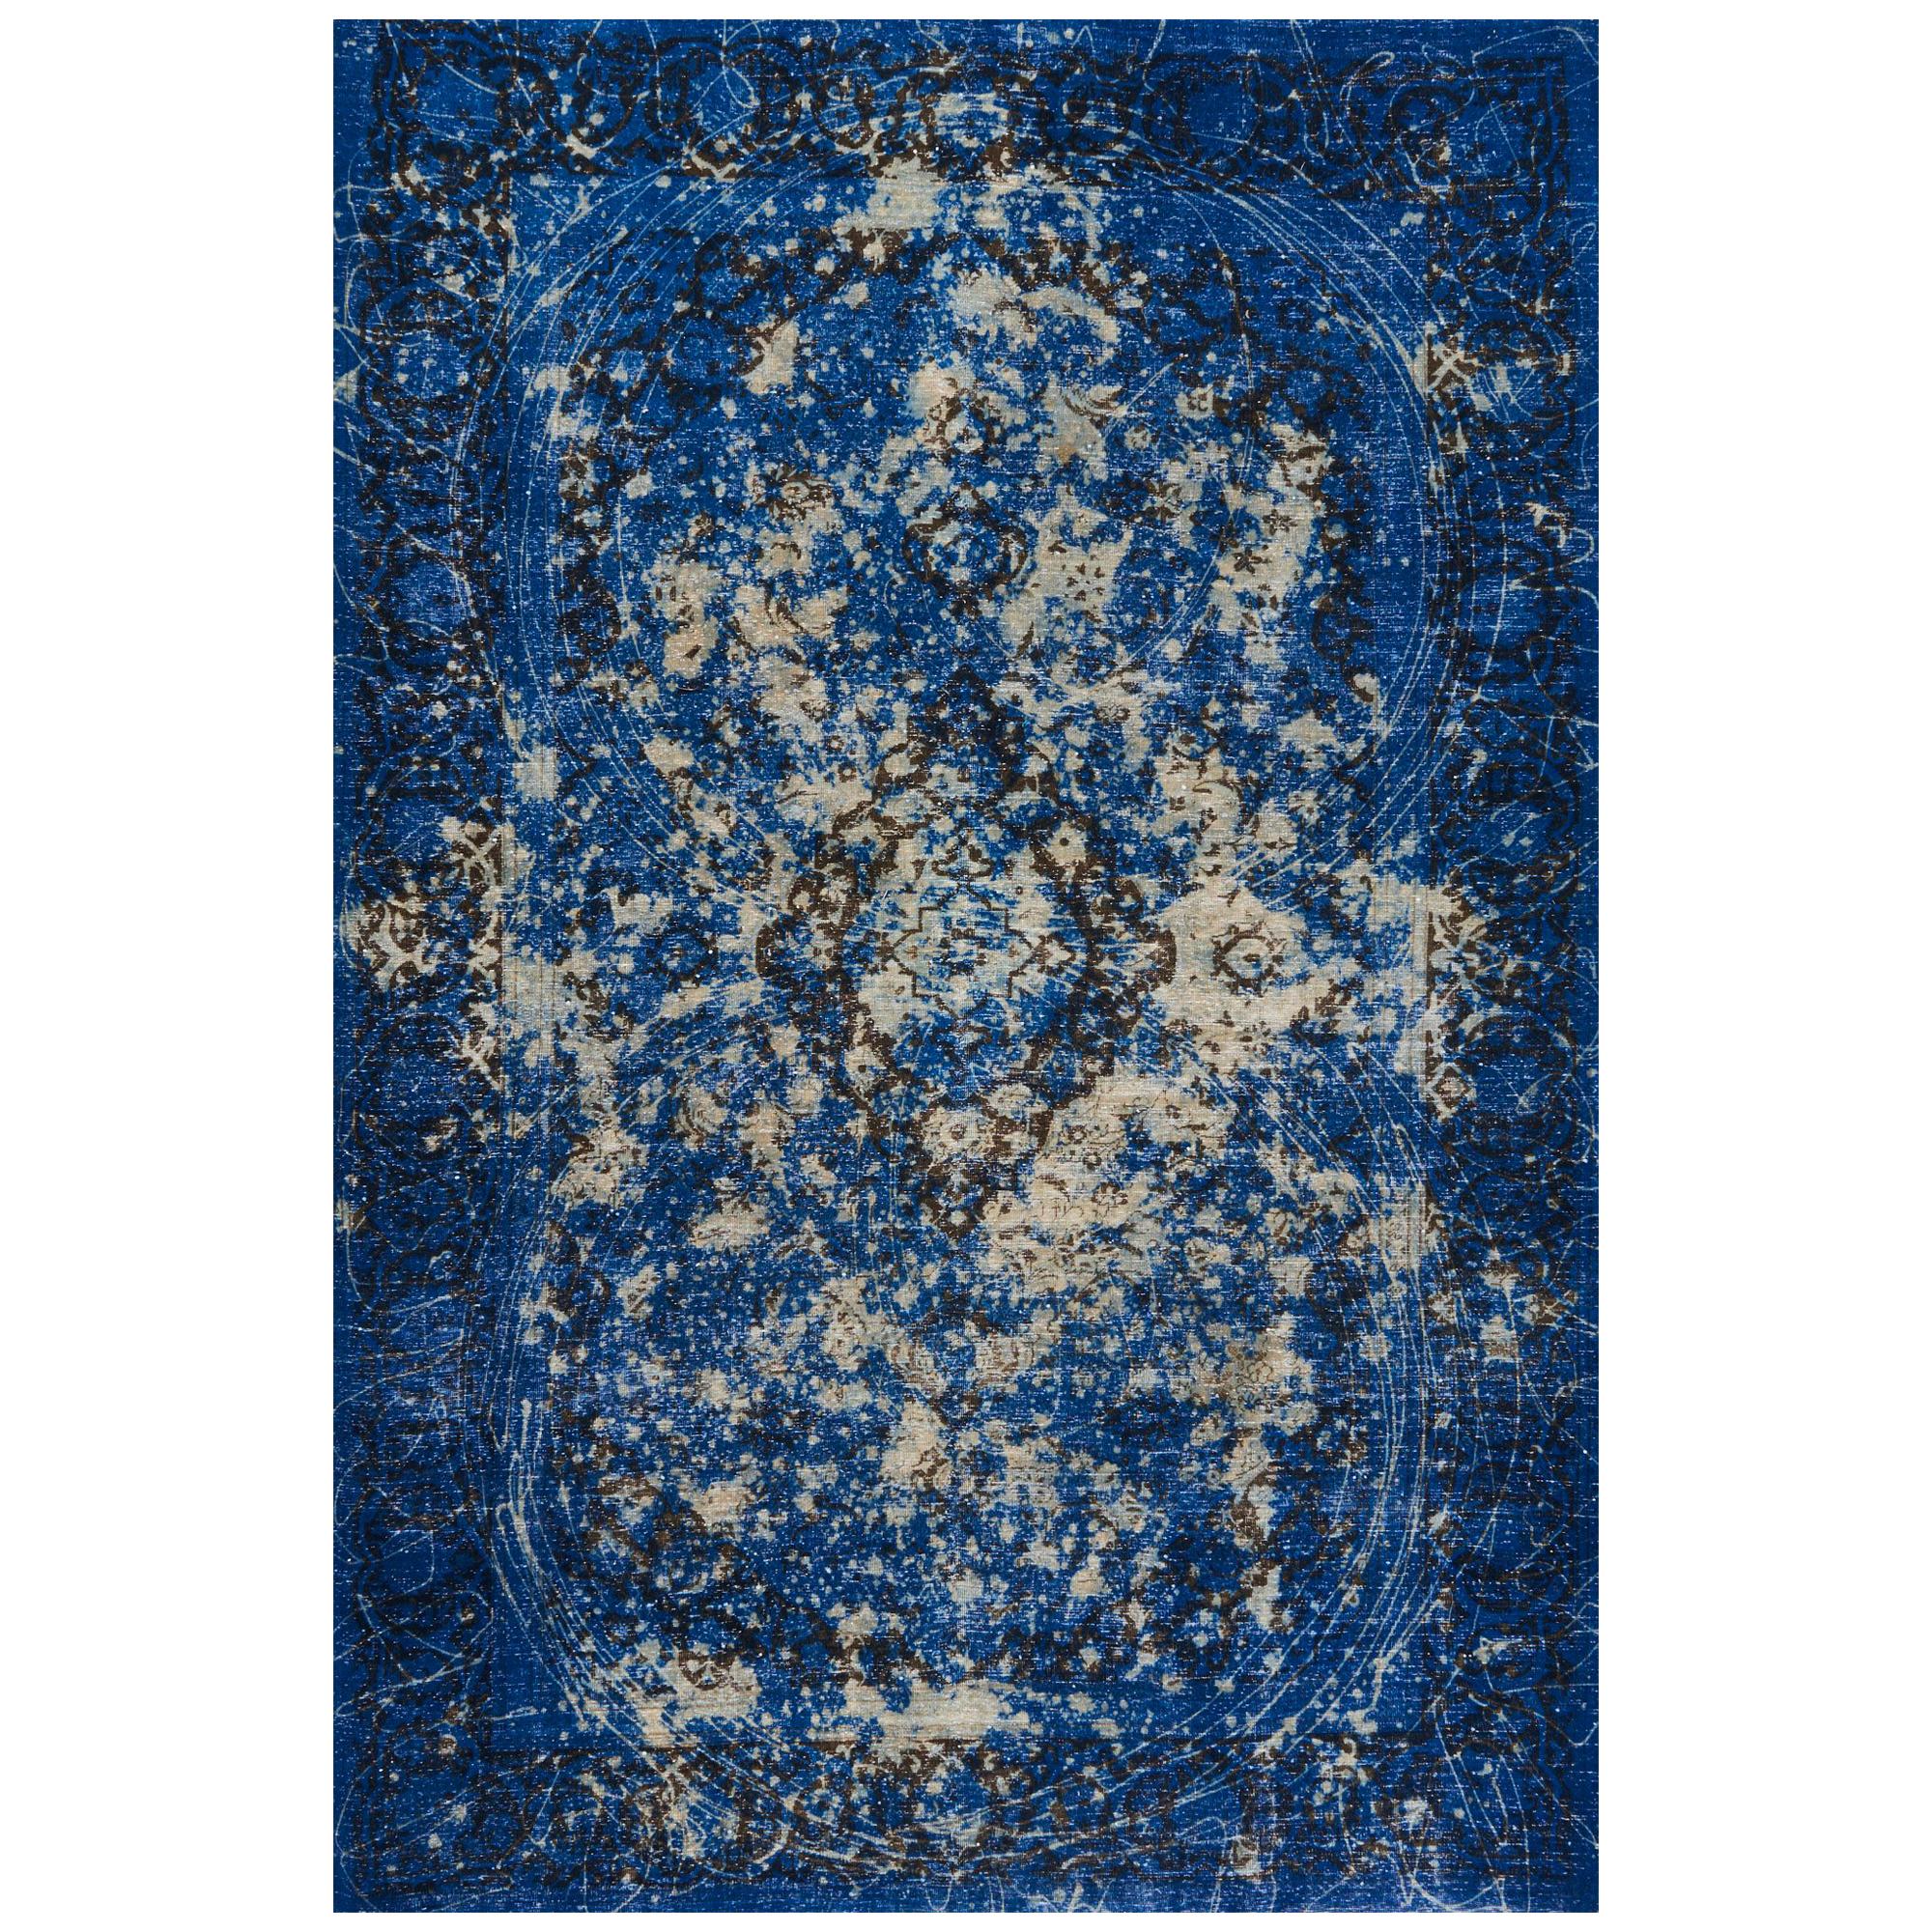 Schumacher Trifid Blauer Teppich aus handgeknüpfter Wolle von Patterson Flynn